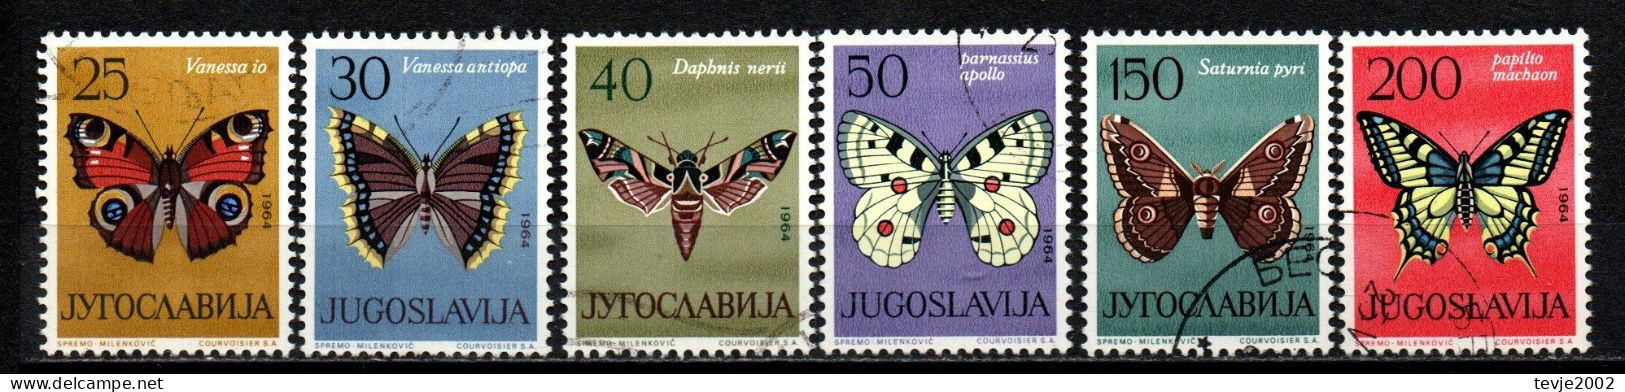 Jugoslawien 1964 - Mi.Nr. 1069 - 1074 - Gestempelt Used - Tiere Animals Schmetterlinge Butterflies - Farfalle